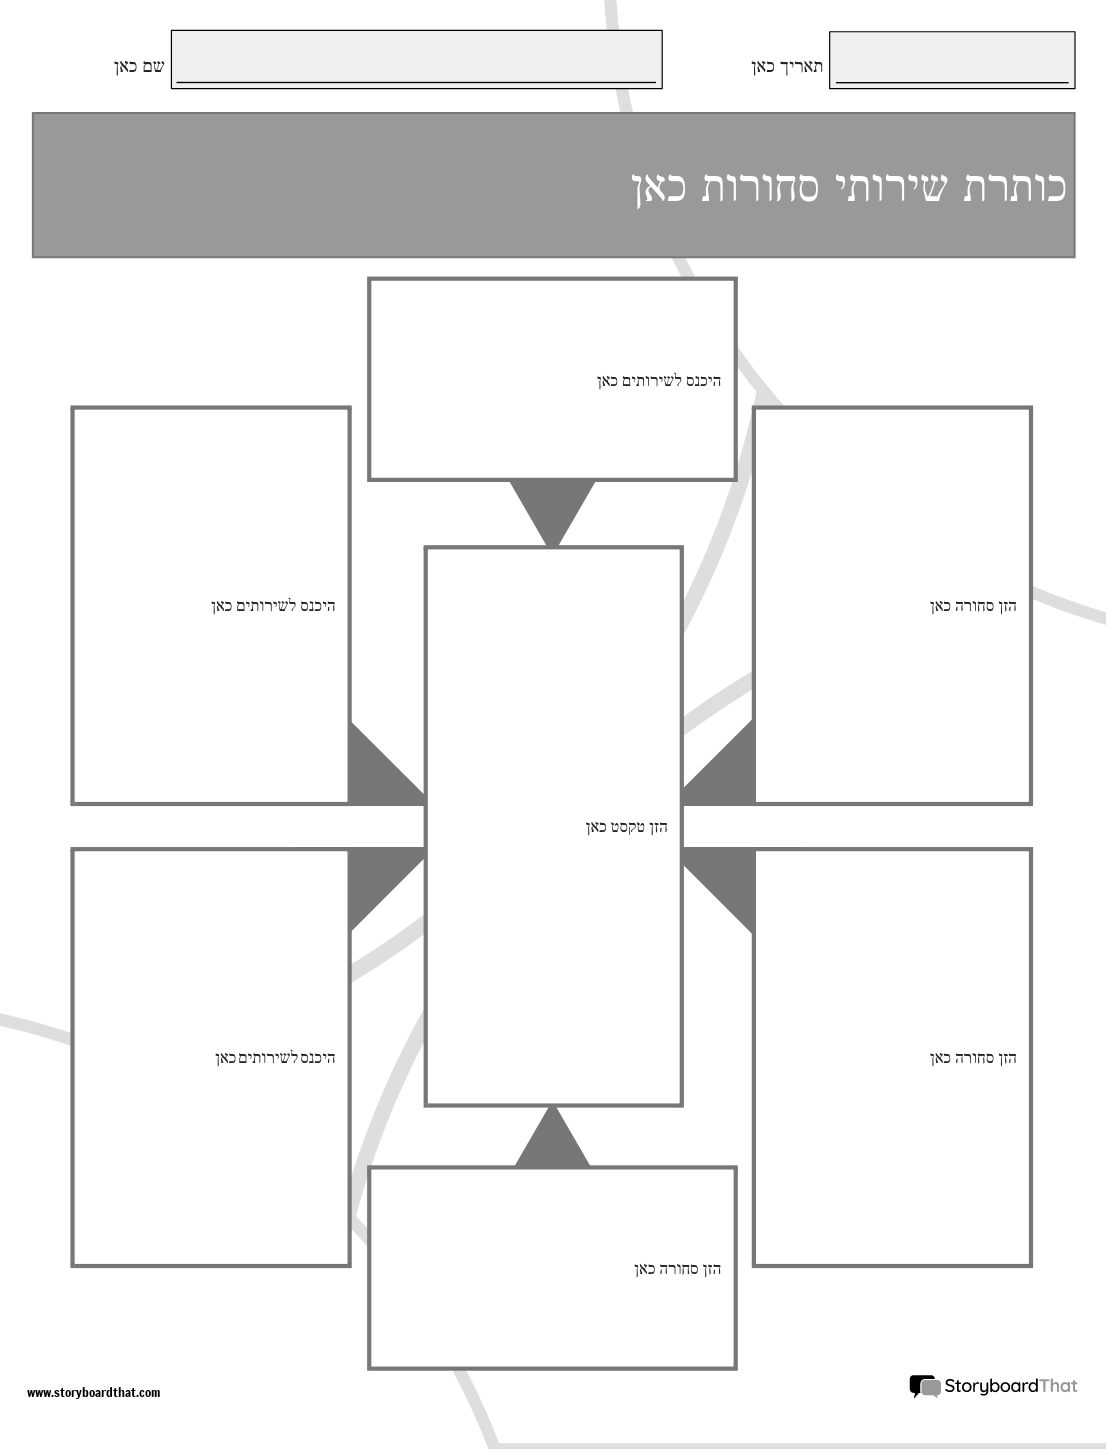 תבנית חדשה ליצירת דף מוצרים ושירותים 3 (שחור-לבן)